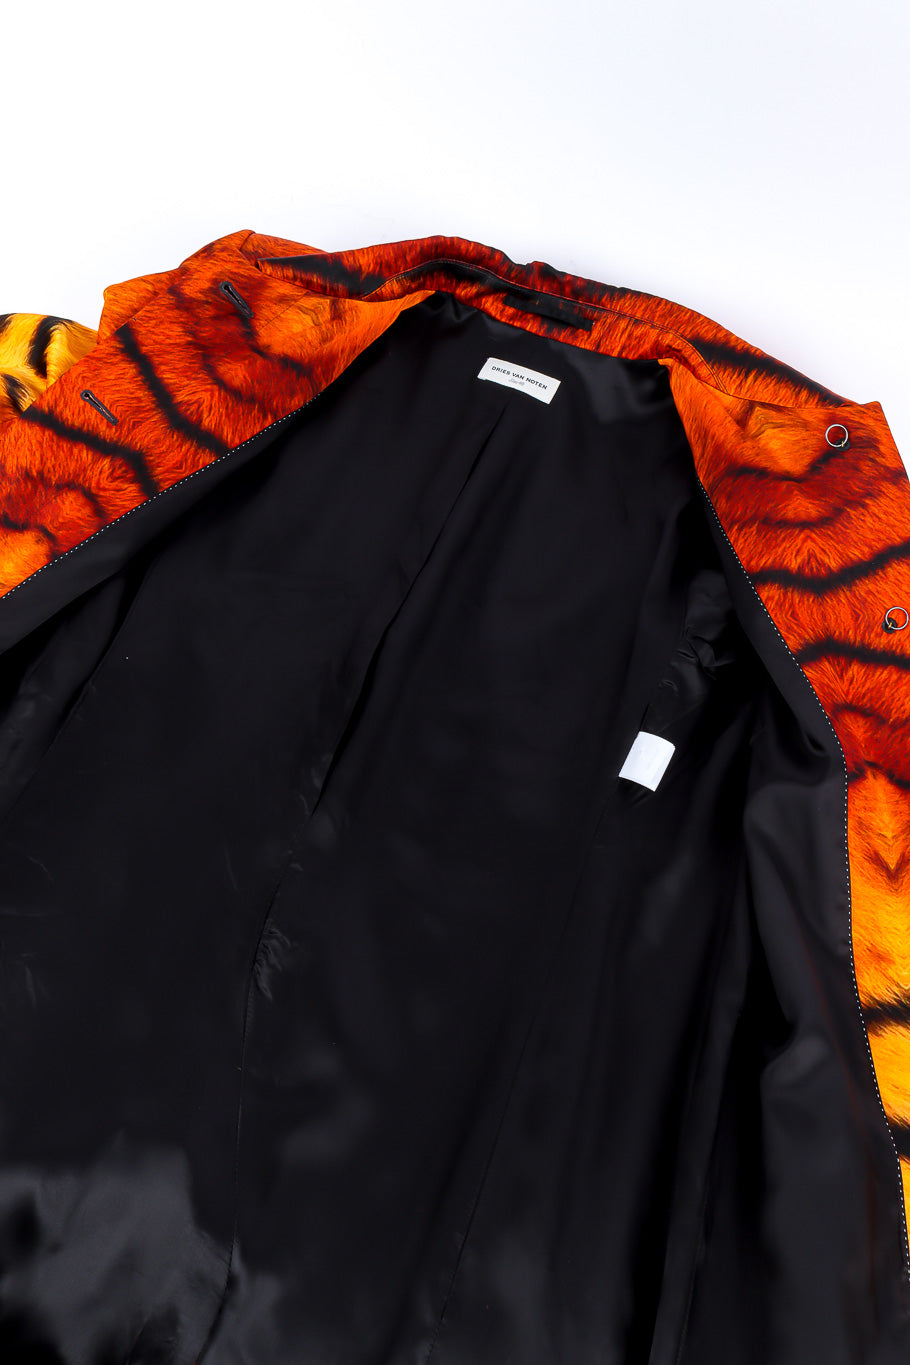 Dries Van Noten tiger duster coat lining detail @recessla